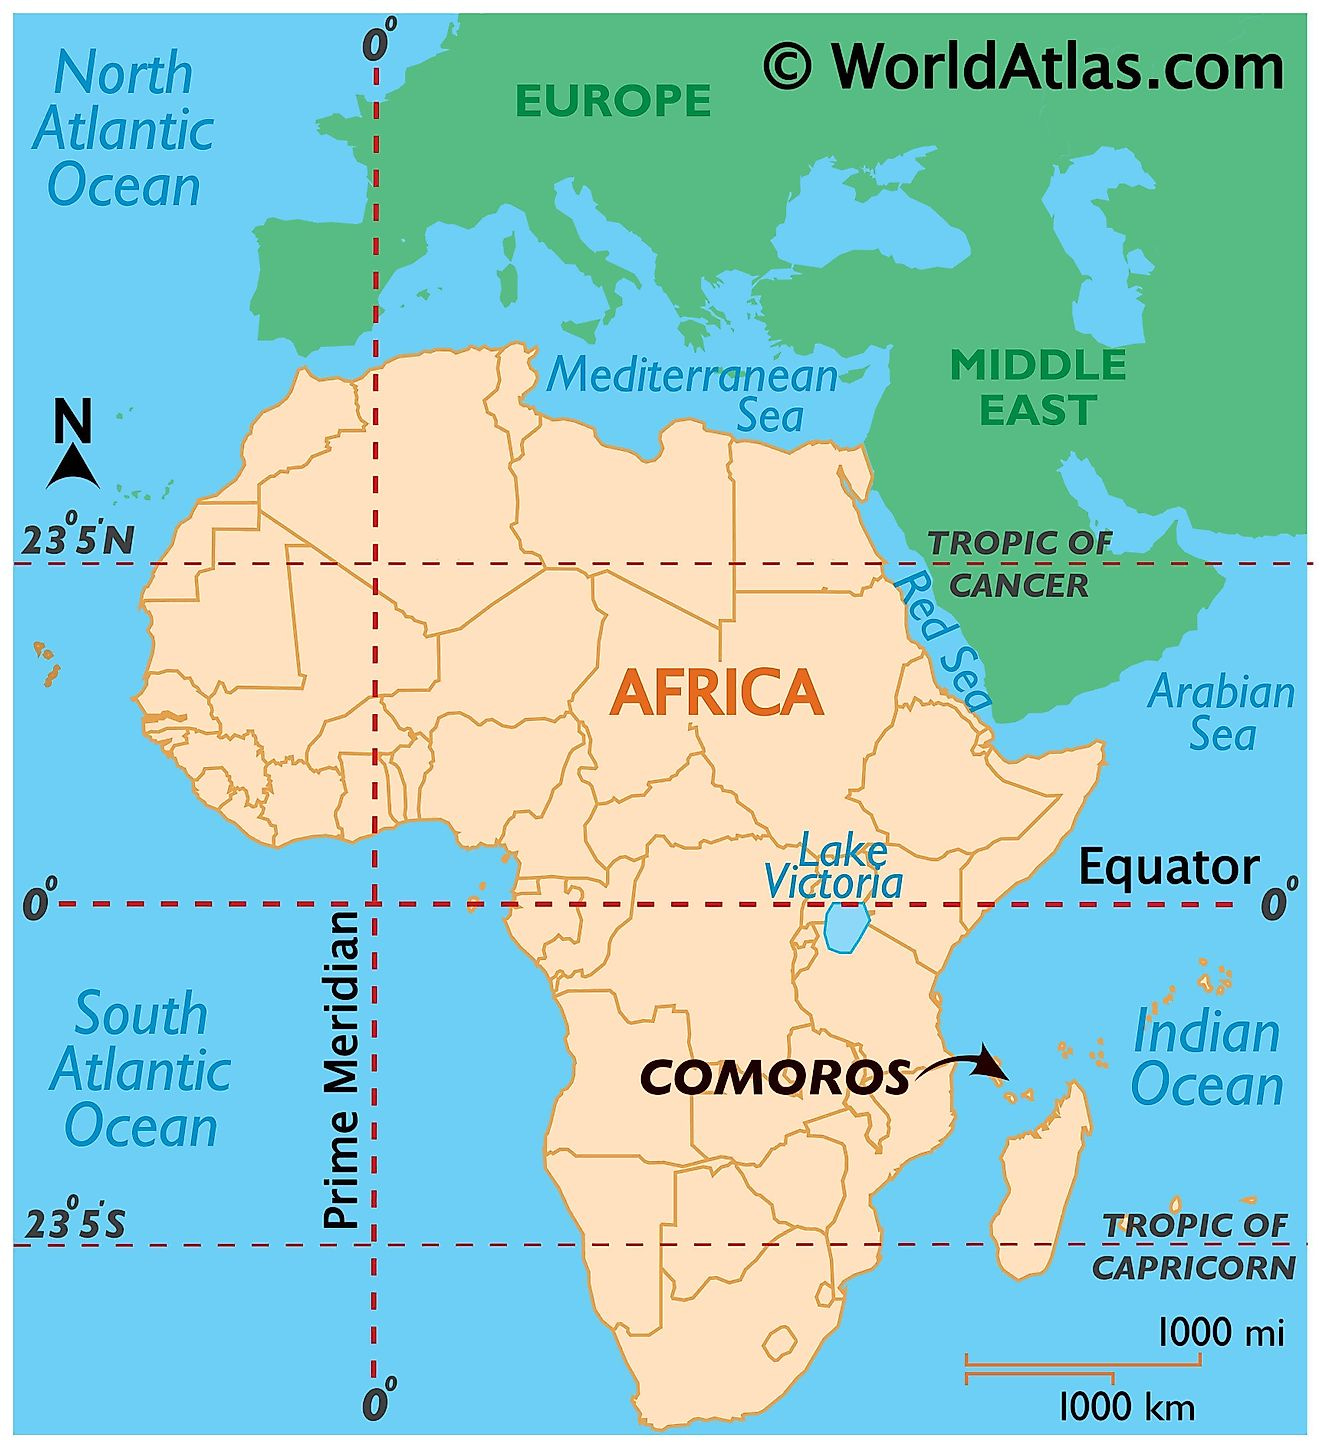 Comoros Maps & Facts - World Atlas